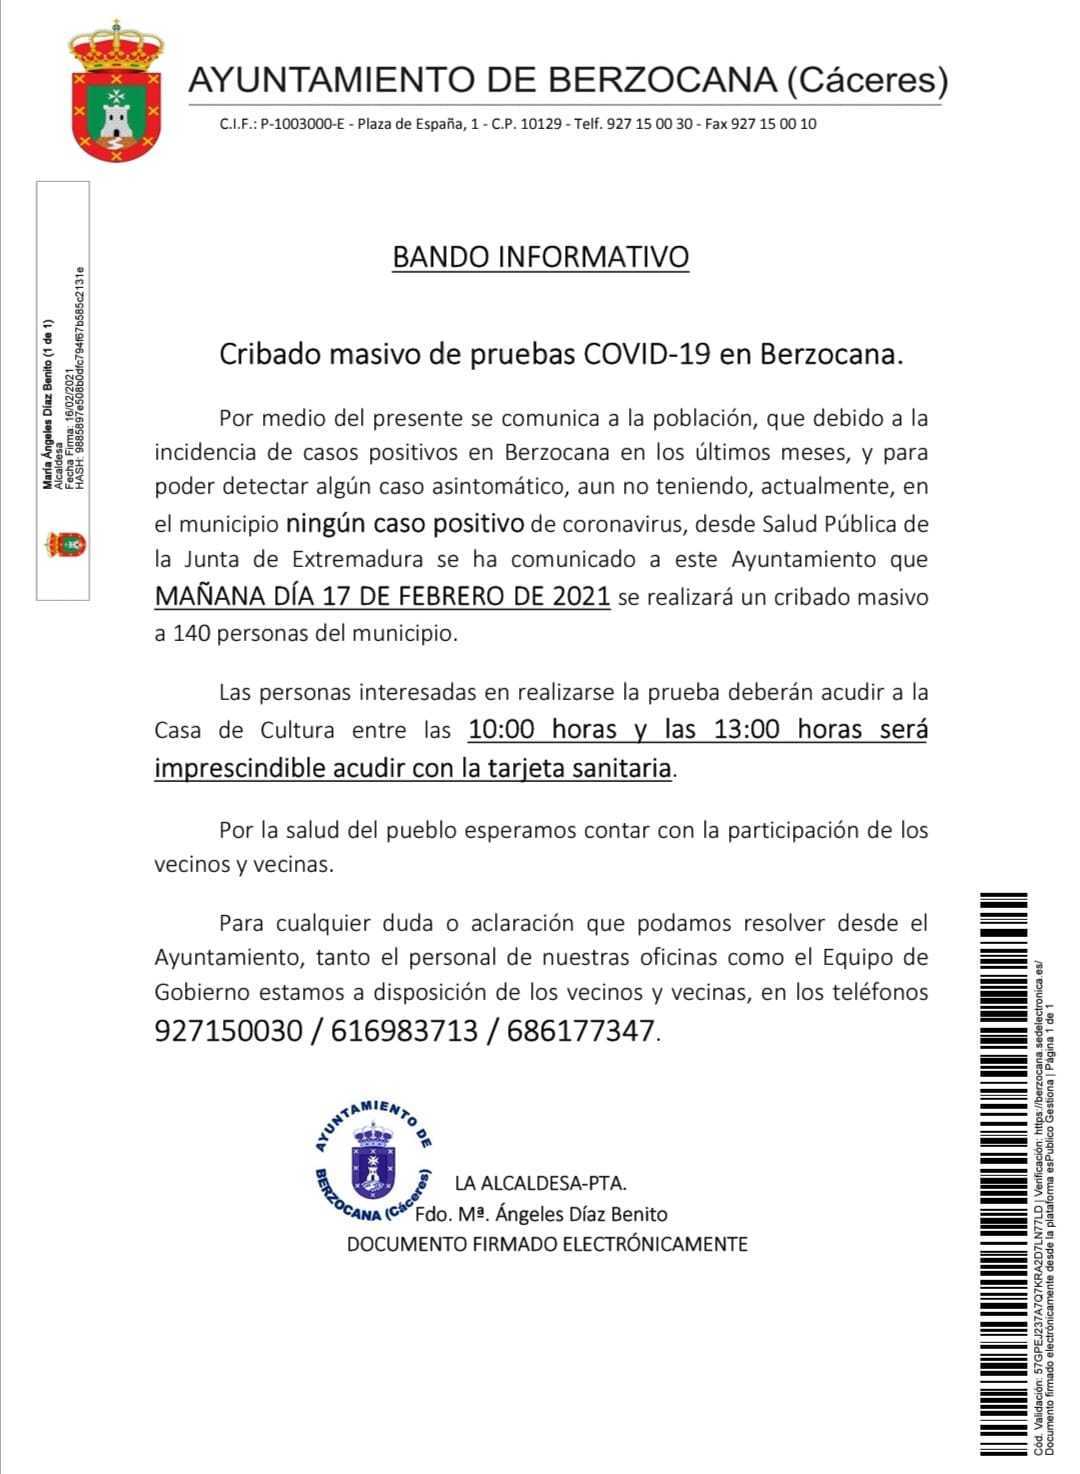 Cribado masivo de COVID-19 (febrero 2021) - Berzocana (Cáceres)